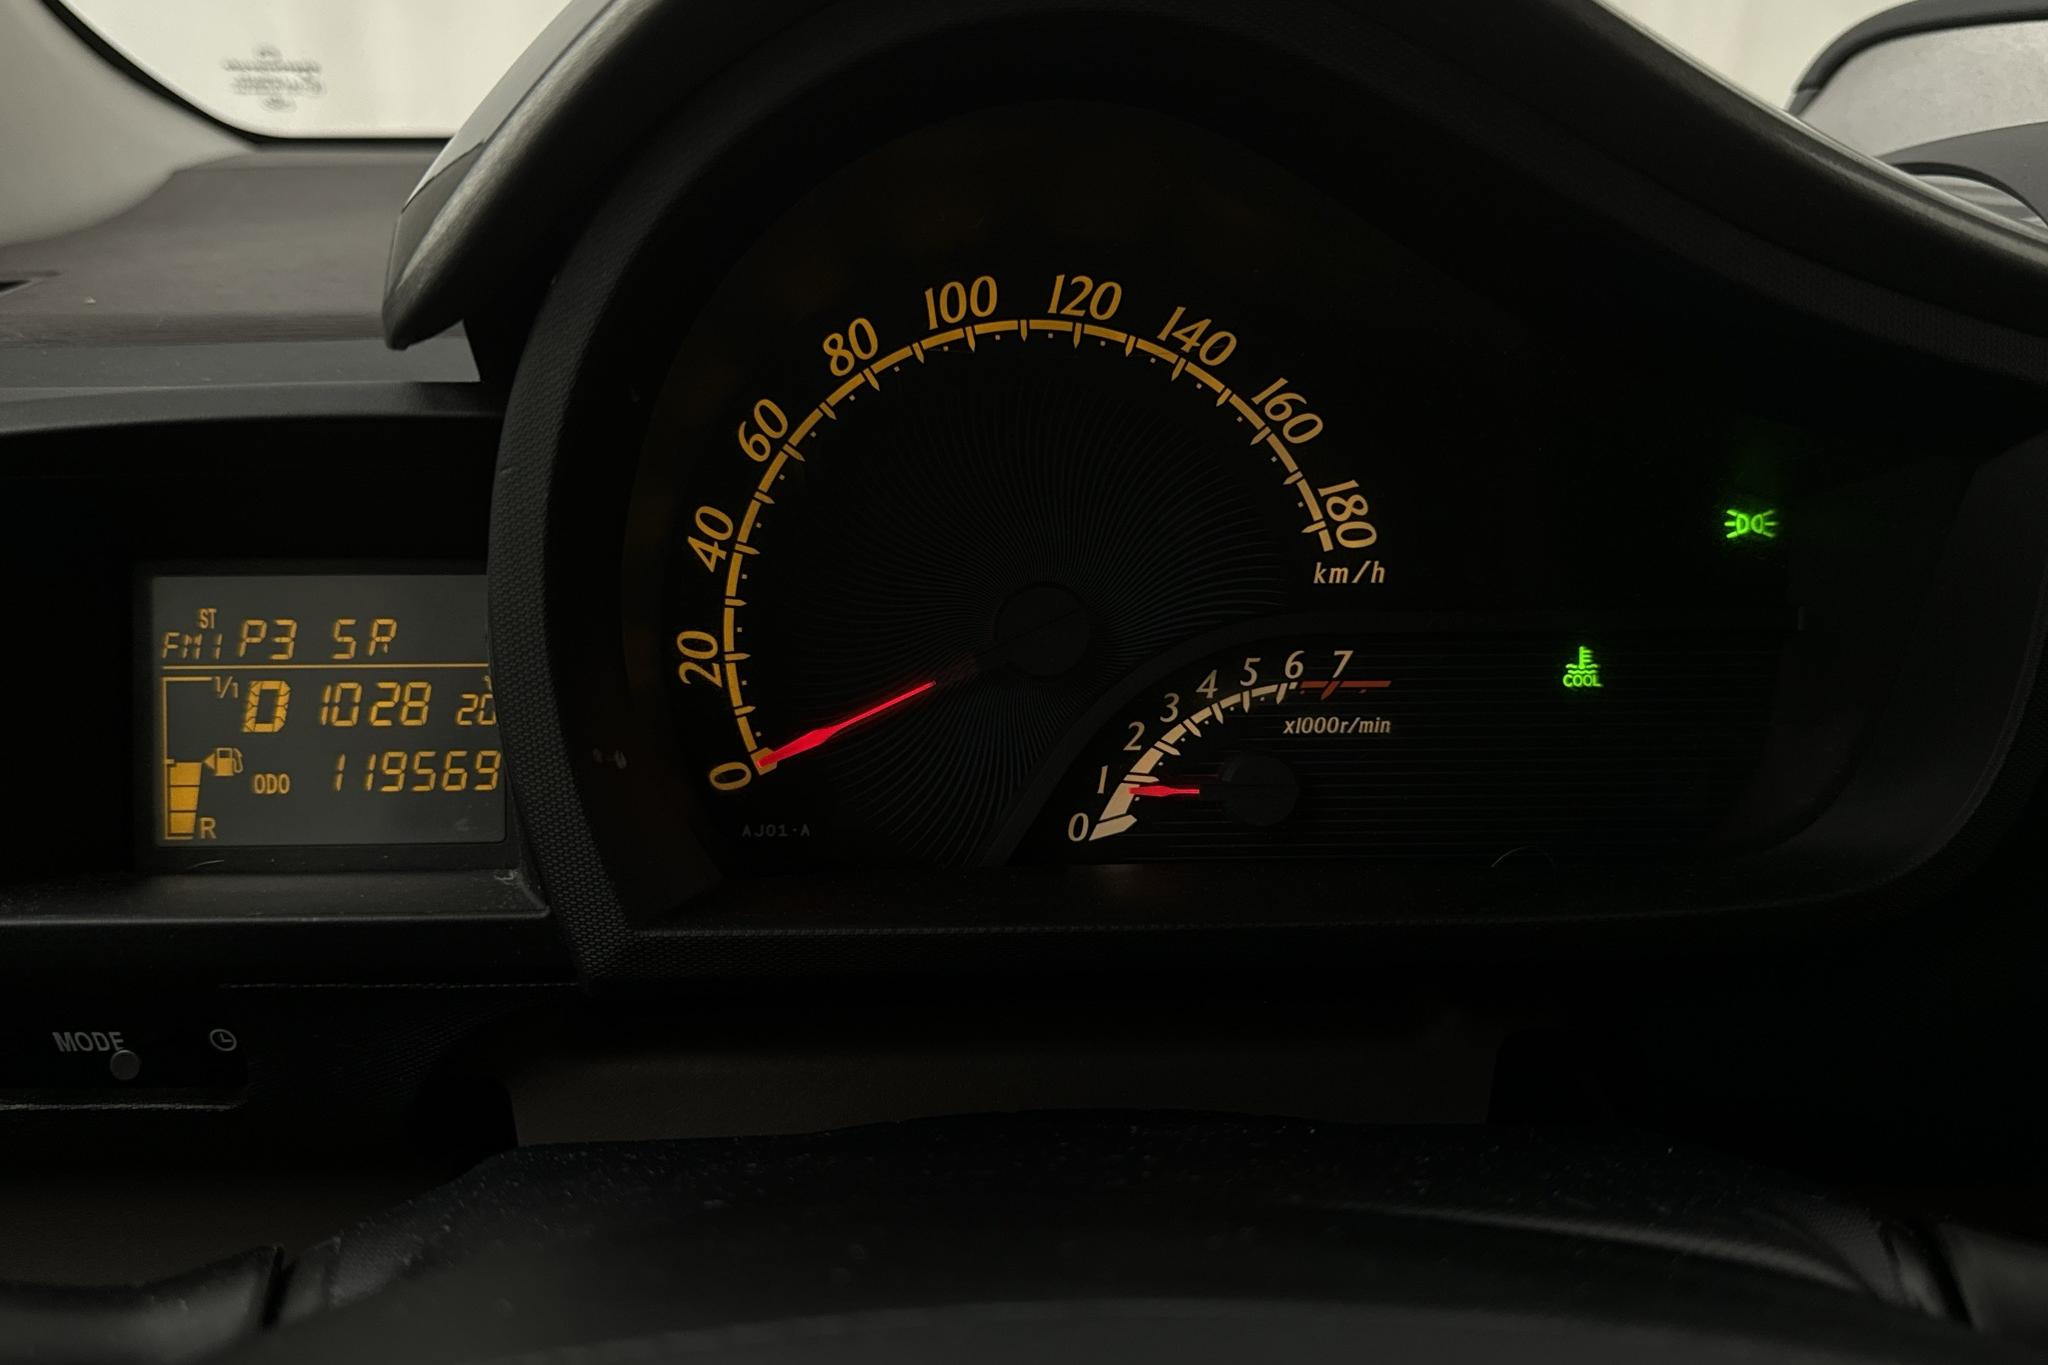 Toyota iQ 1.0 (68hk) - 119 570 km - Automaatne - 2009